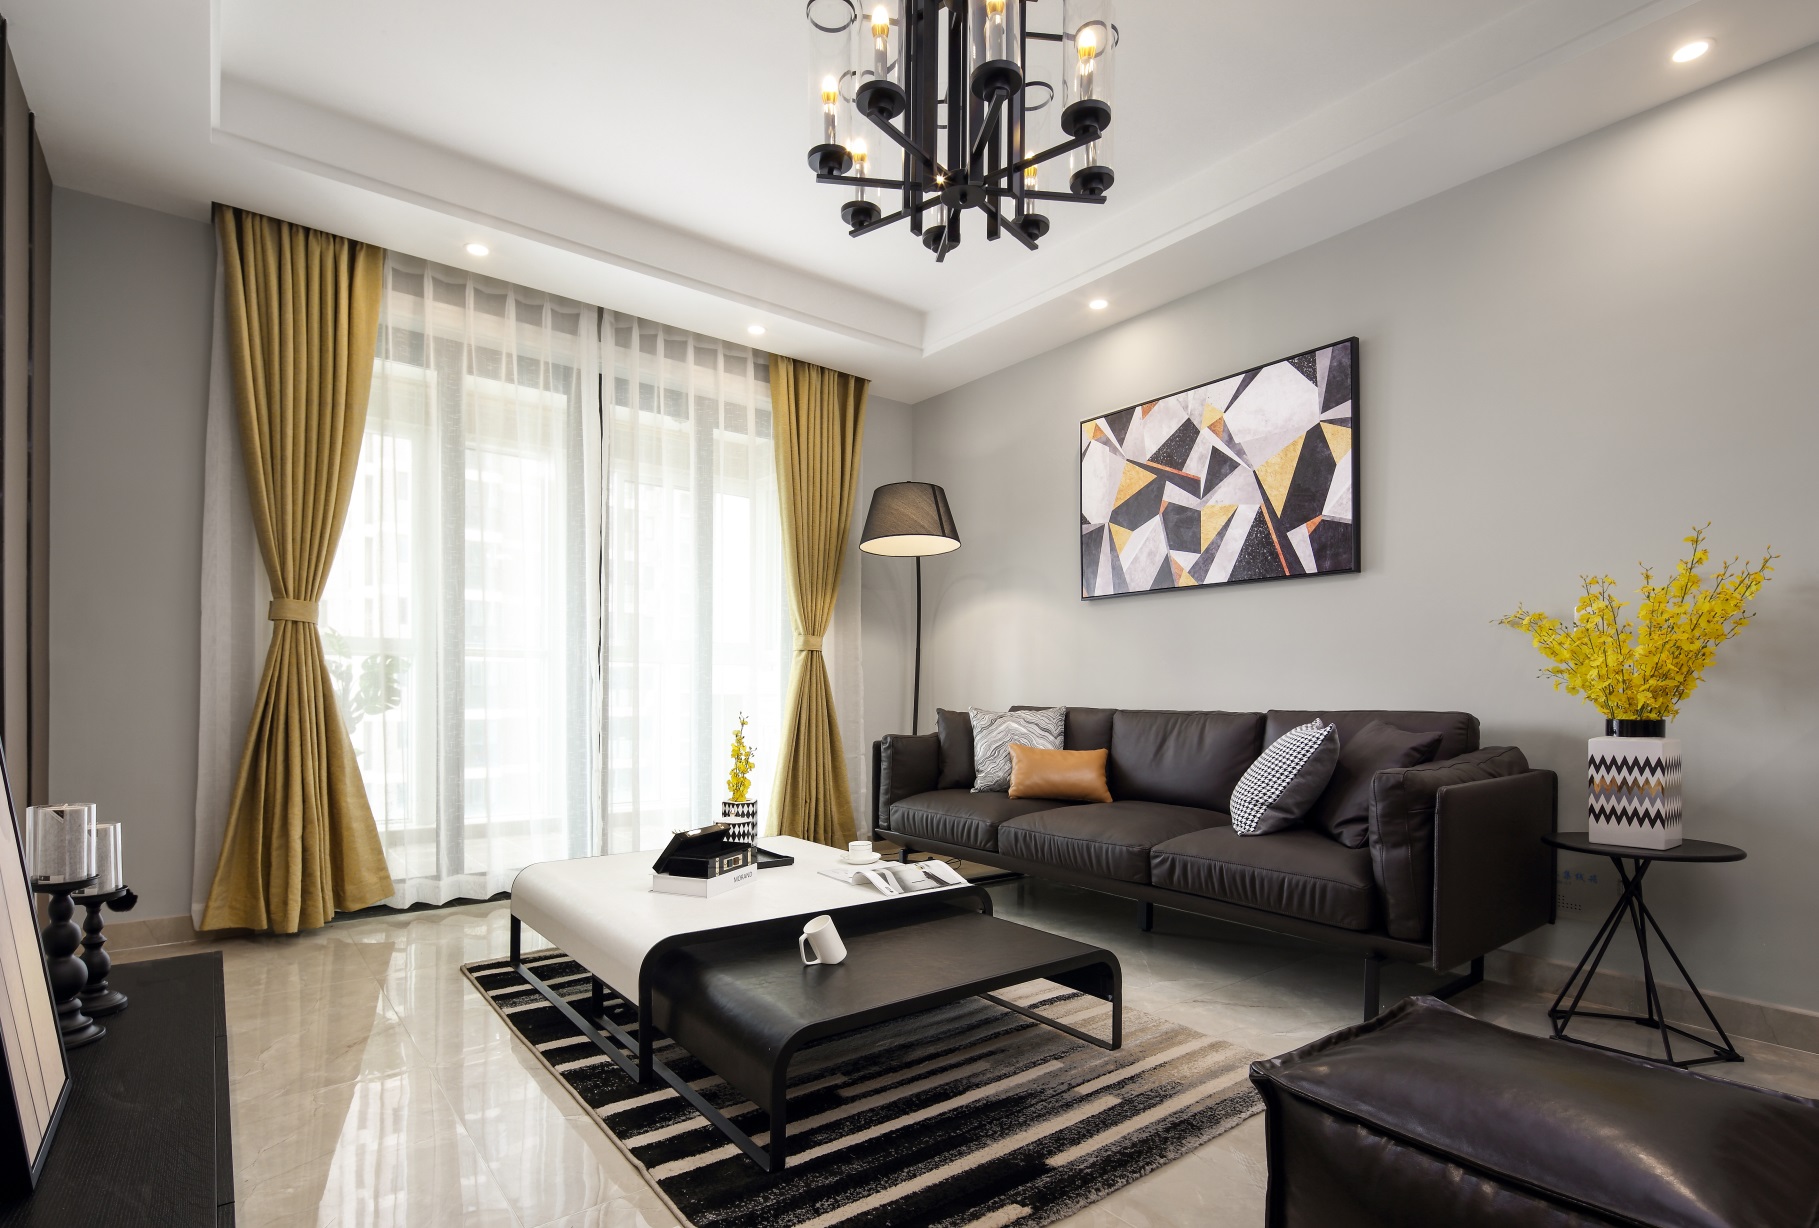 客厅空间主要以黑白灰进行搭配，凸显出美式风格的稳定氛围，跳色软装增加了一份活跃感。